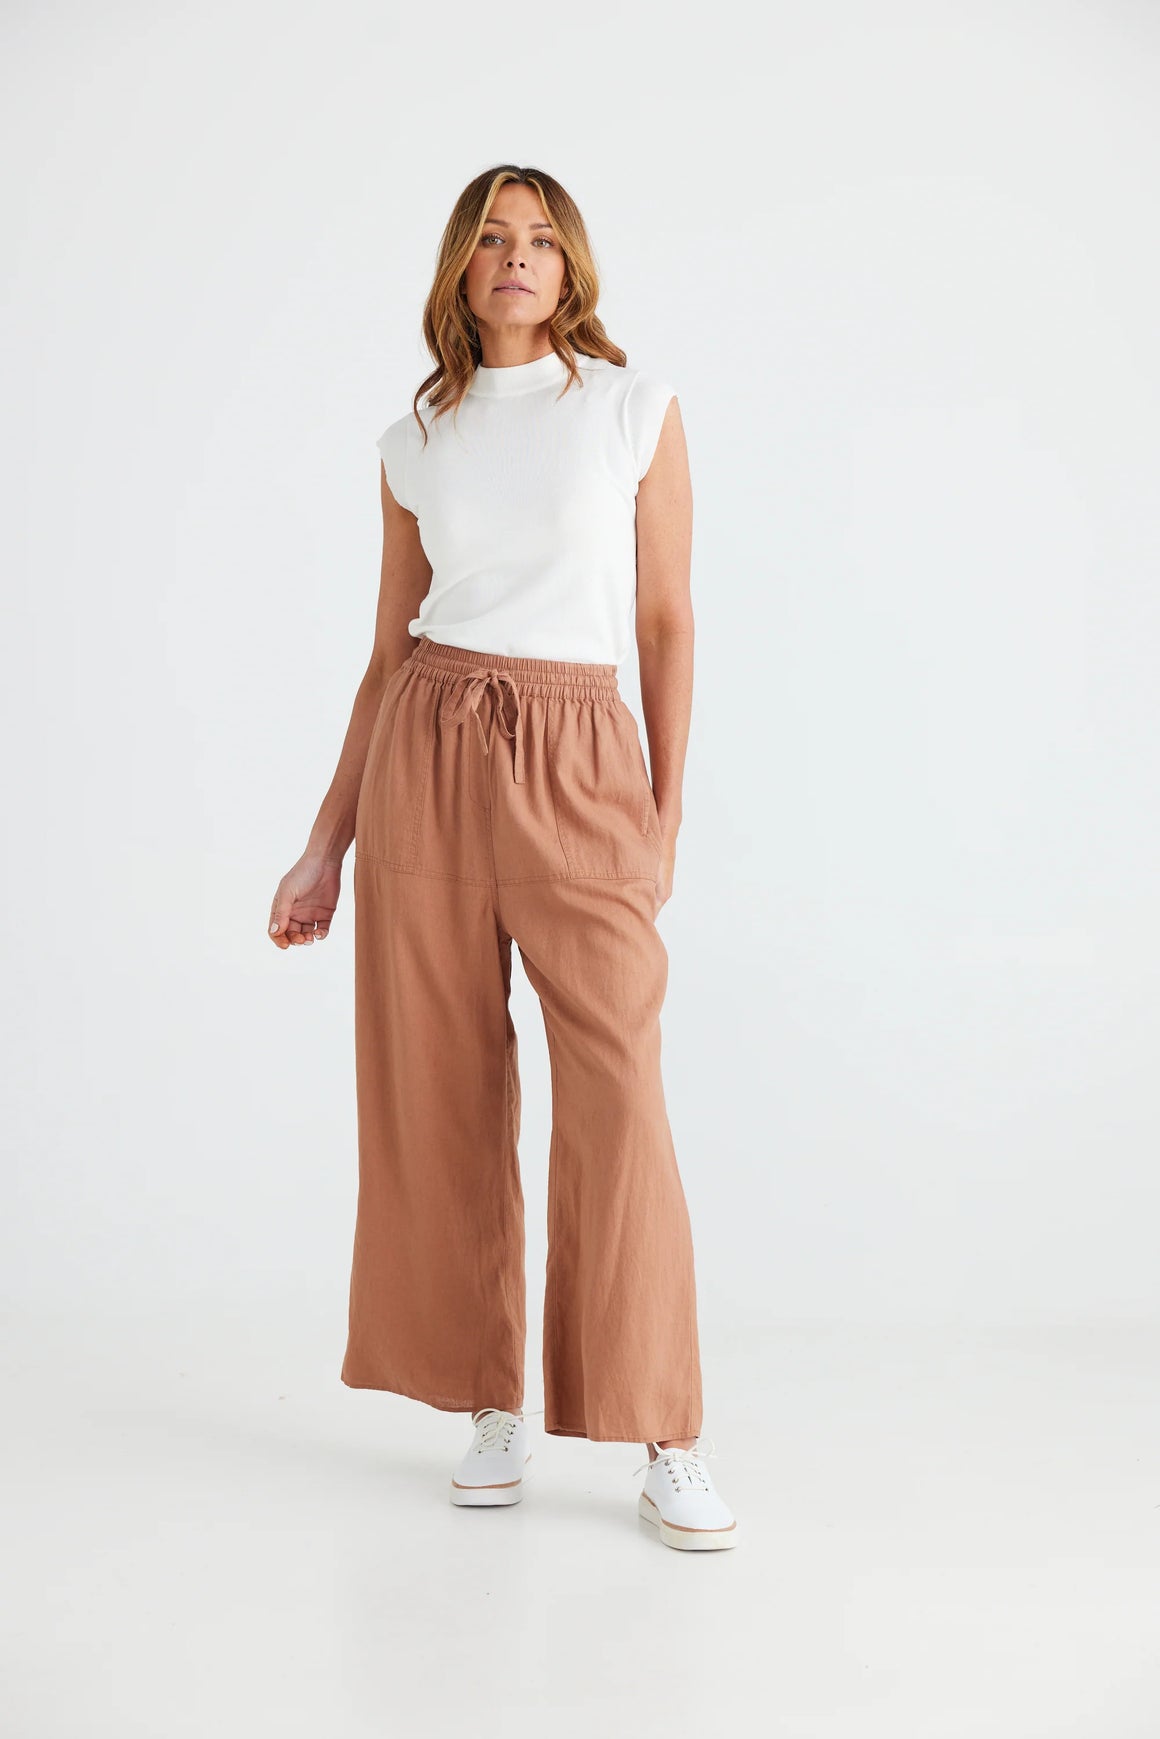 Light brown linen blend casual pant